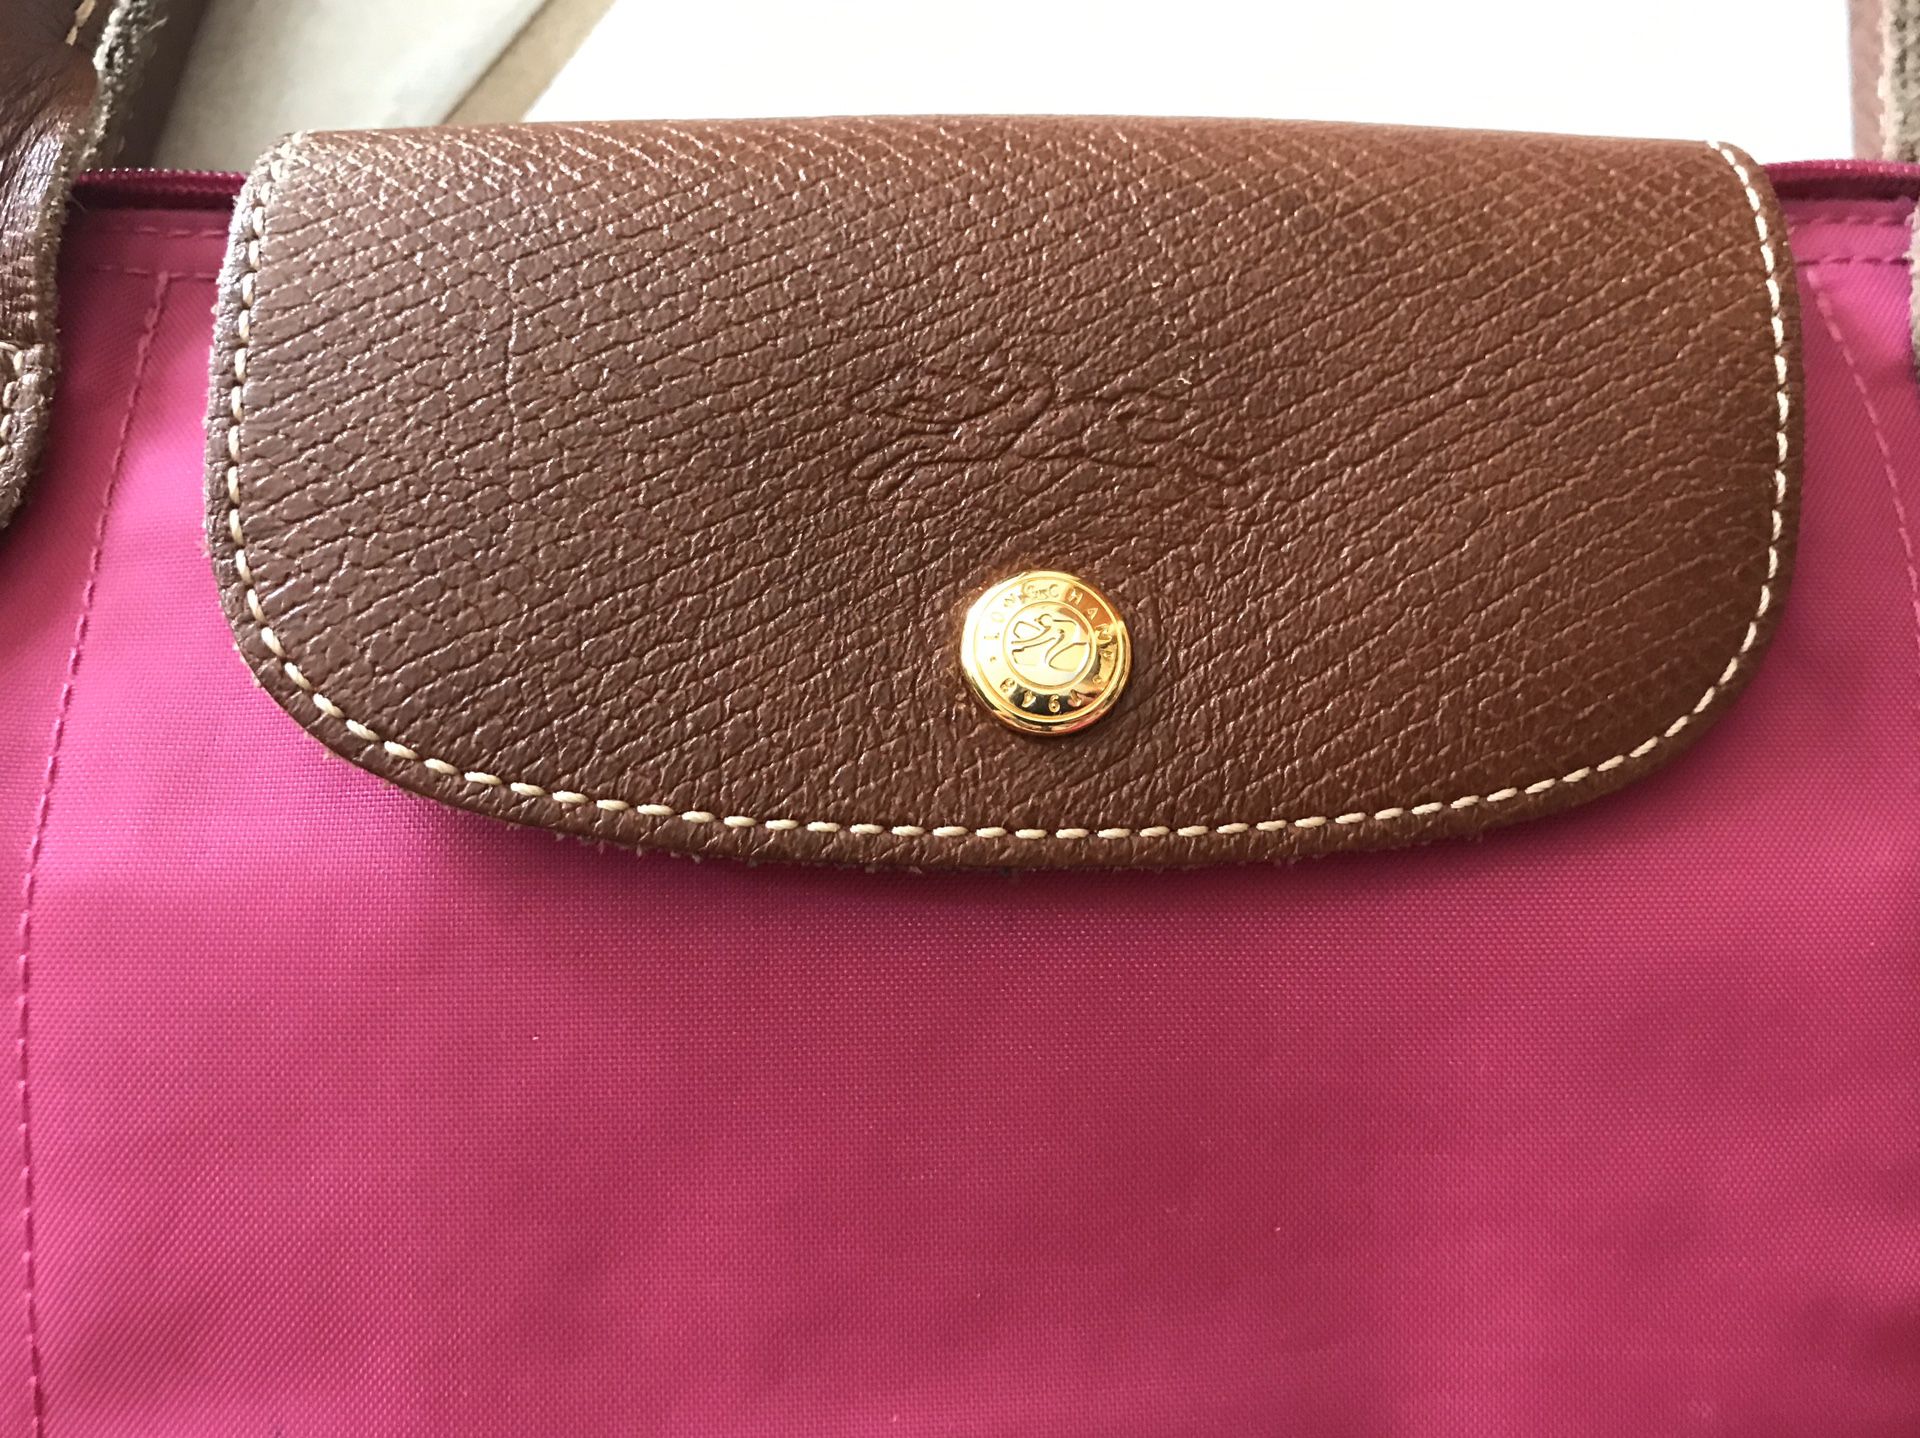 Longchamp purse -authentic